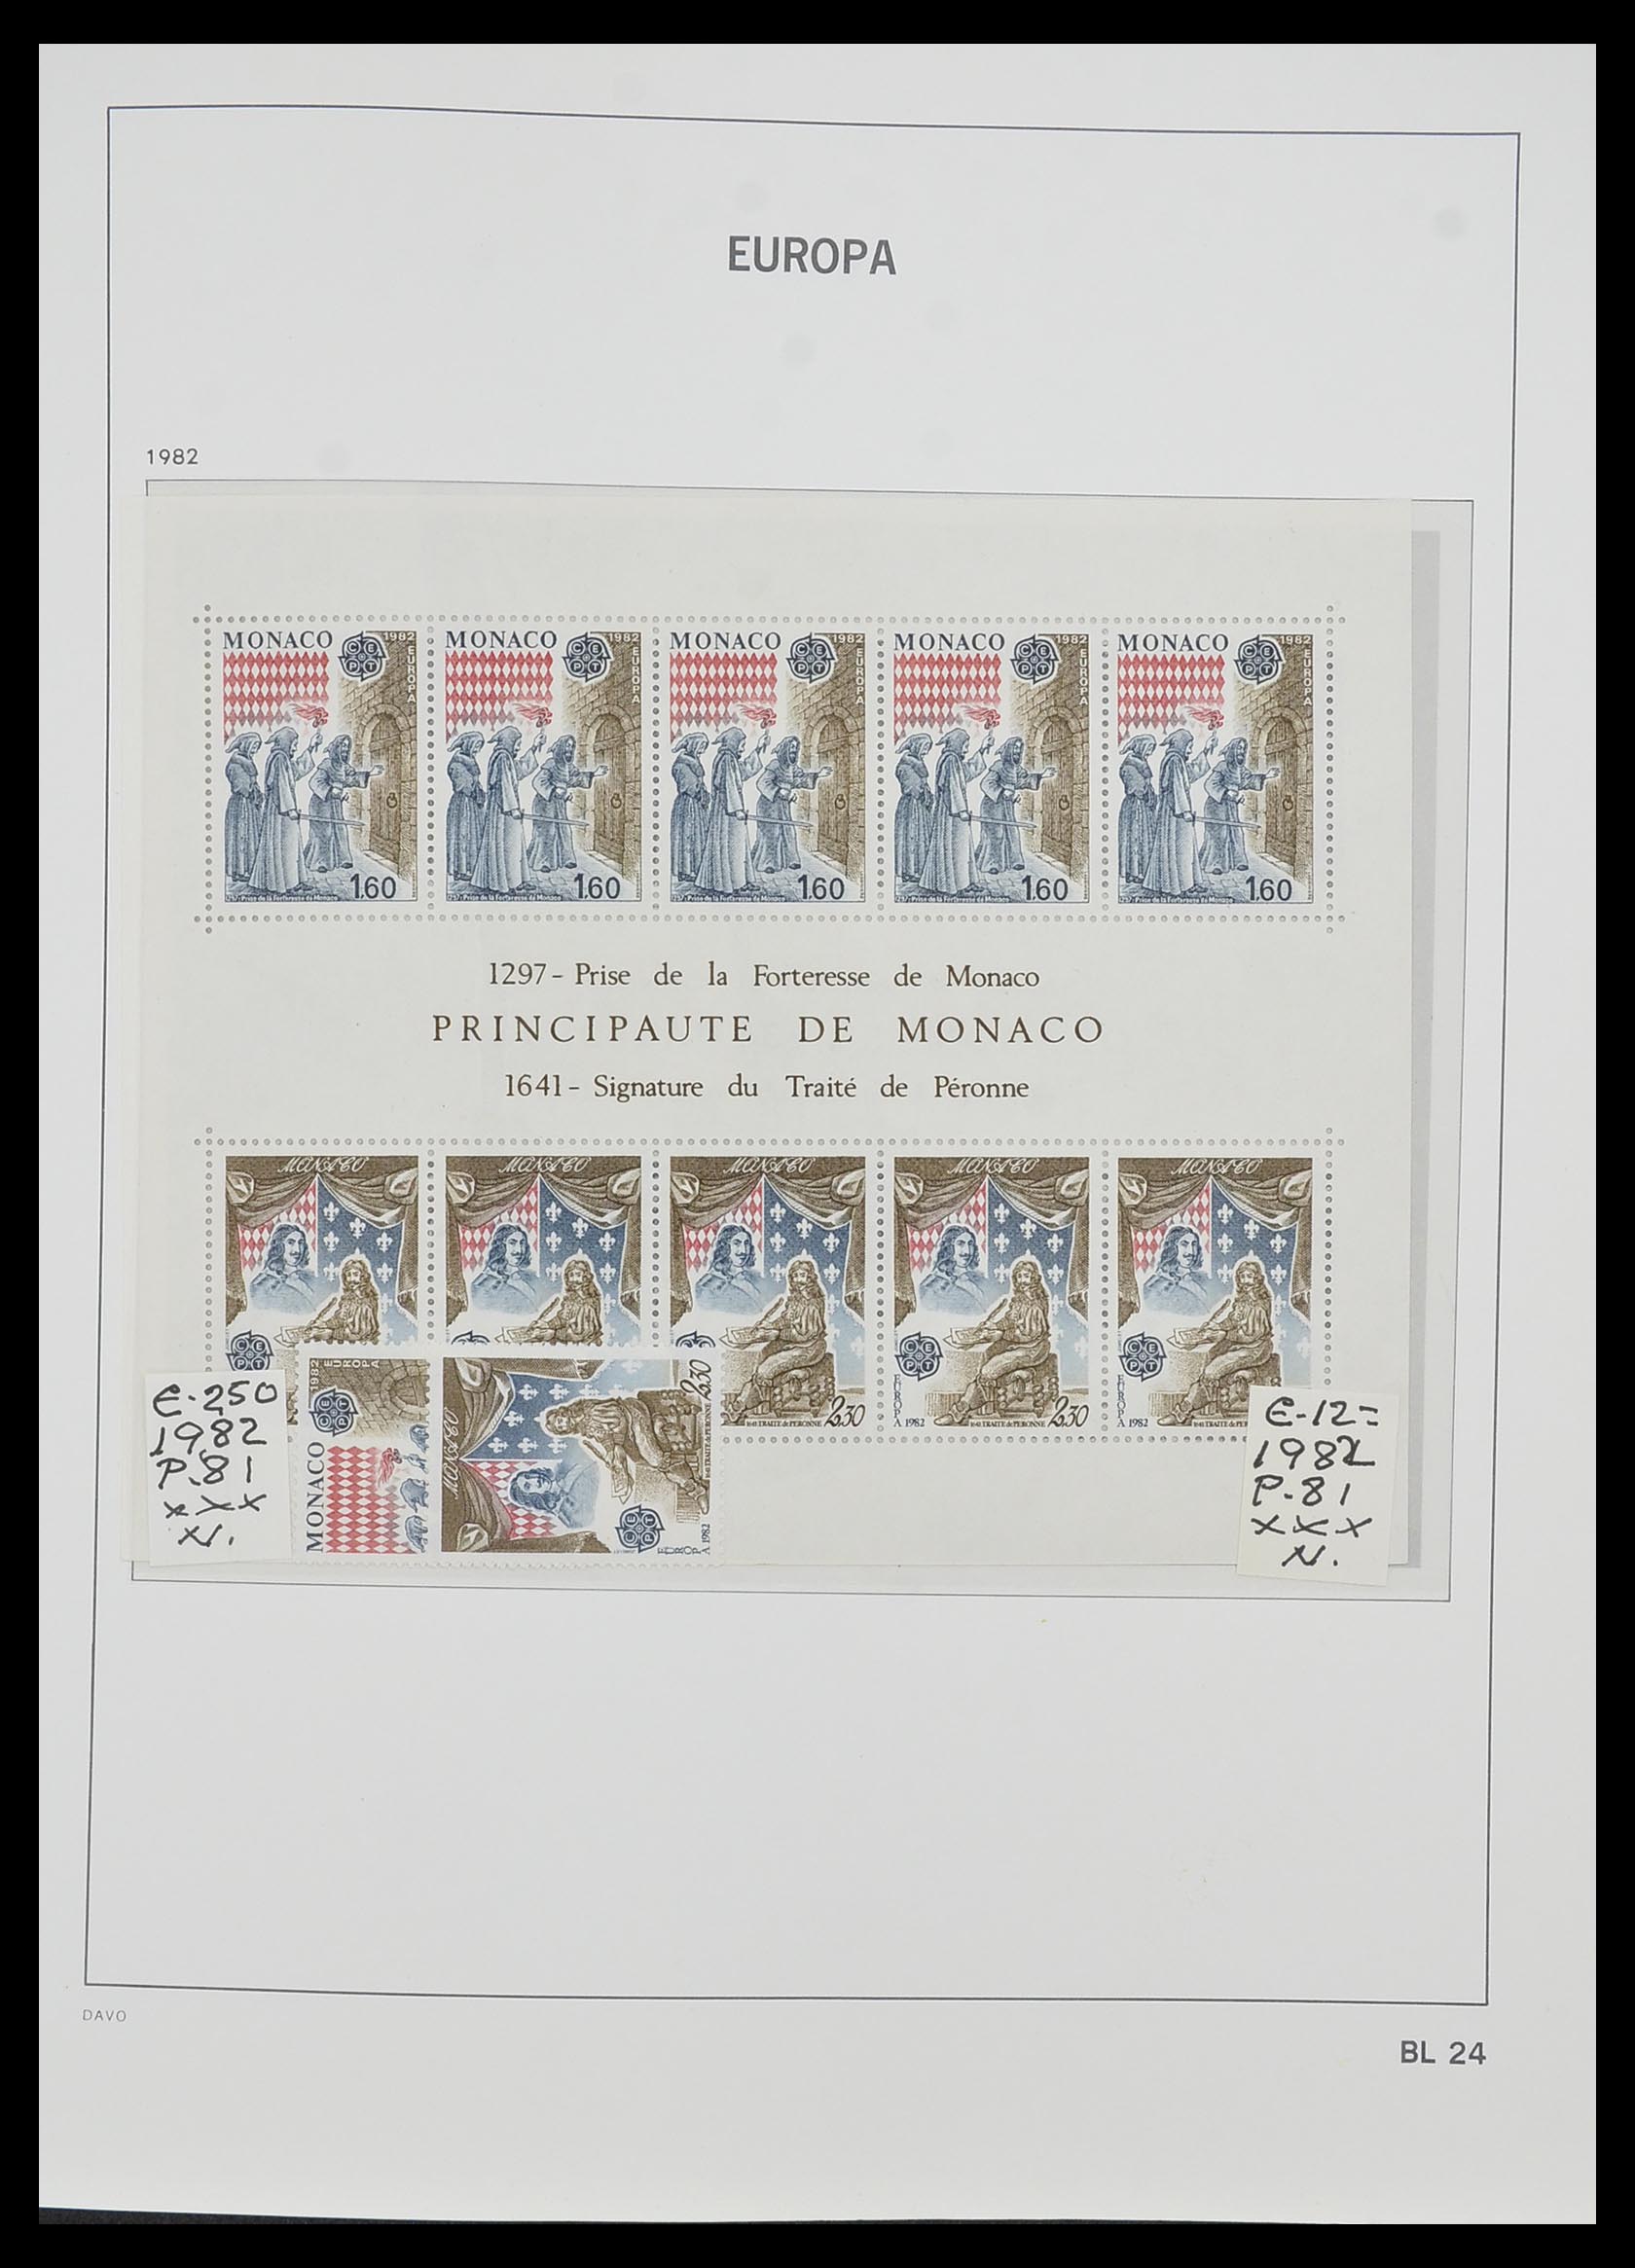 33985 024 - Stamp collection 33985 Europa CEPT souvenir sheets 1974-2014.